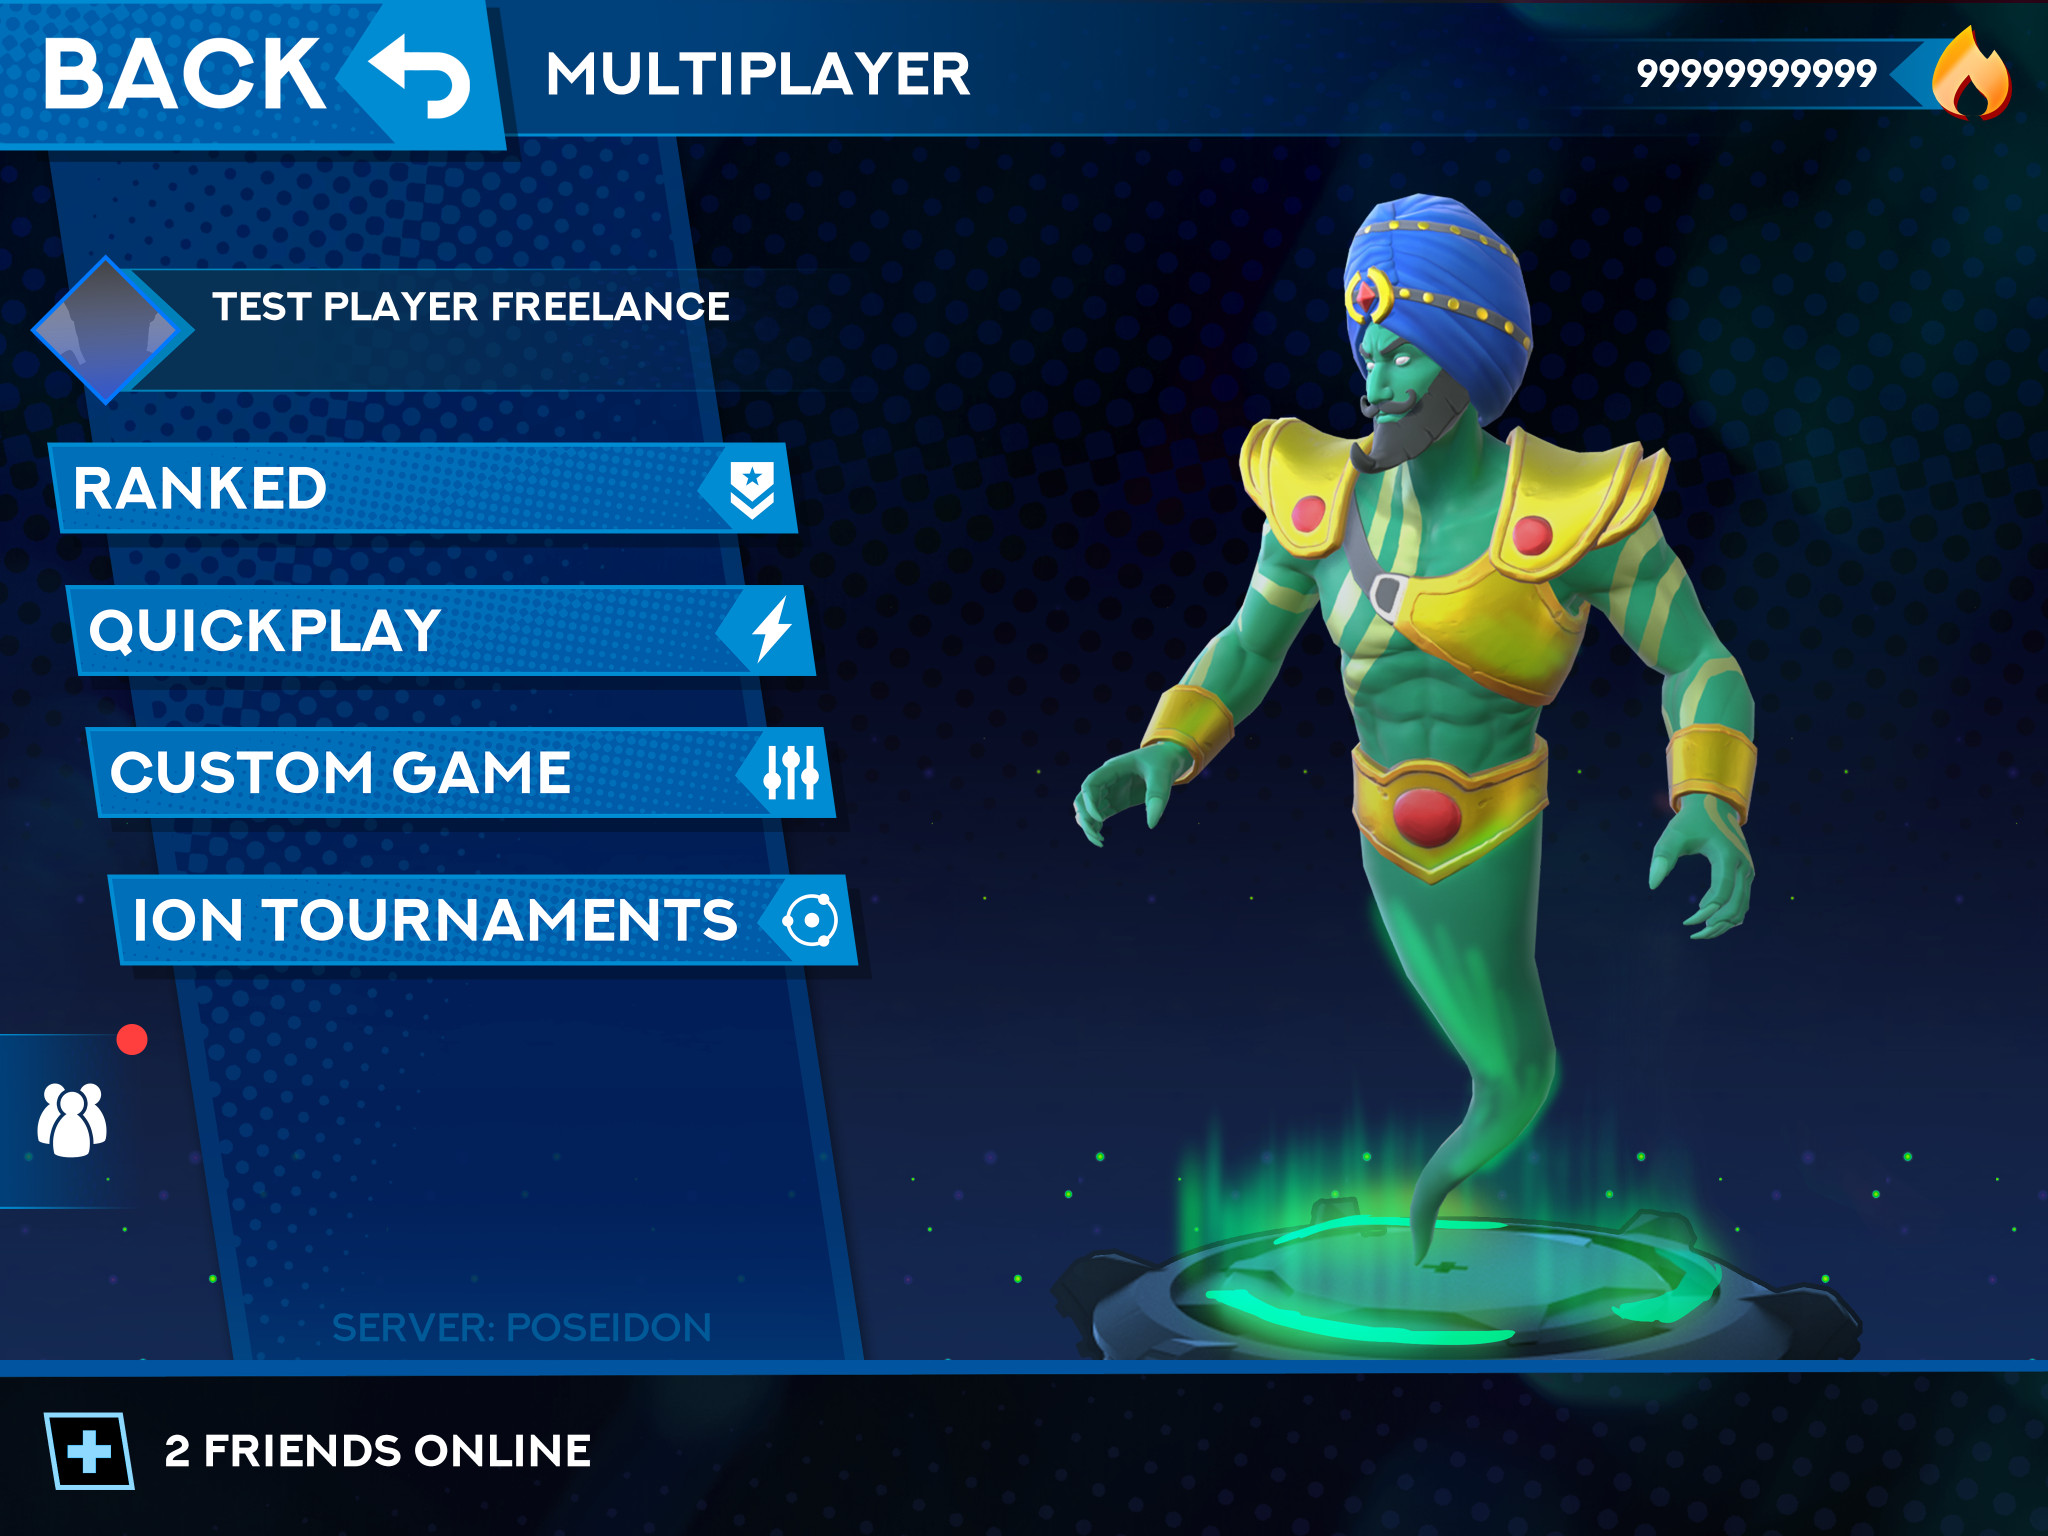 Multiplayer menu